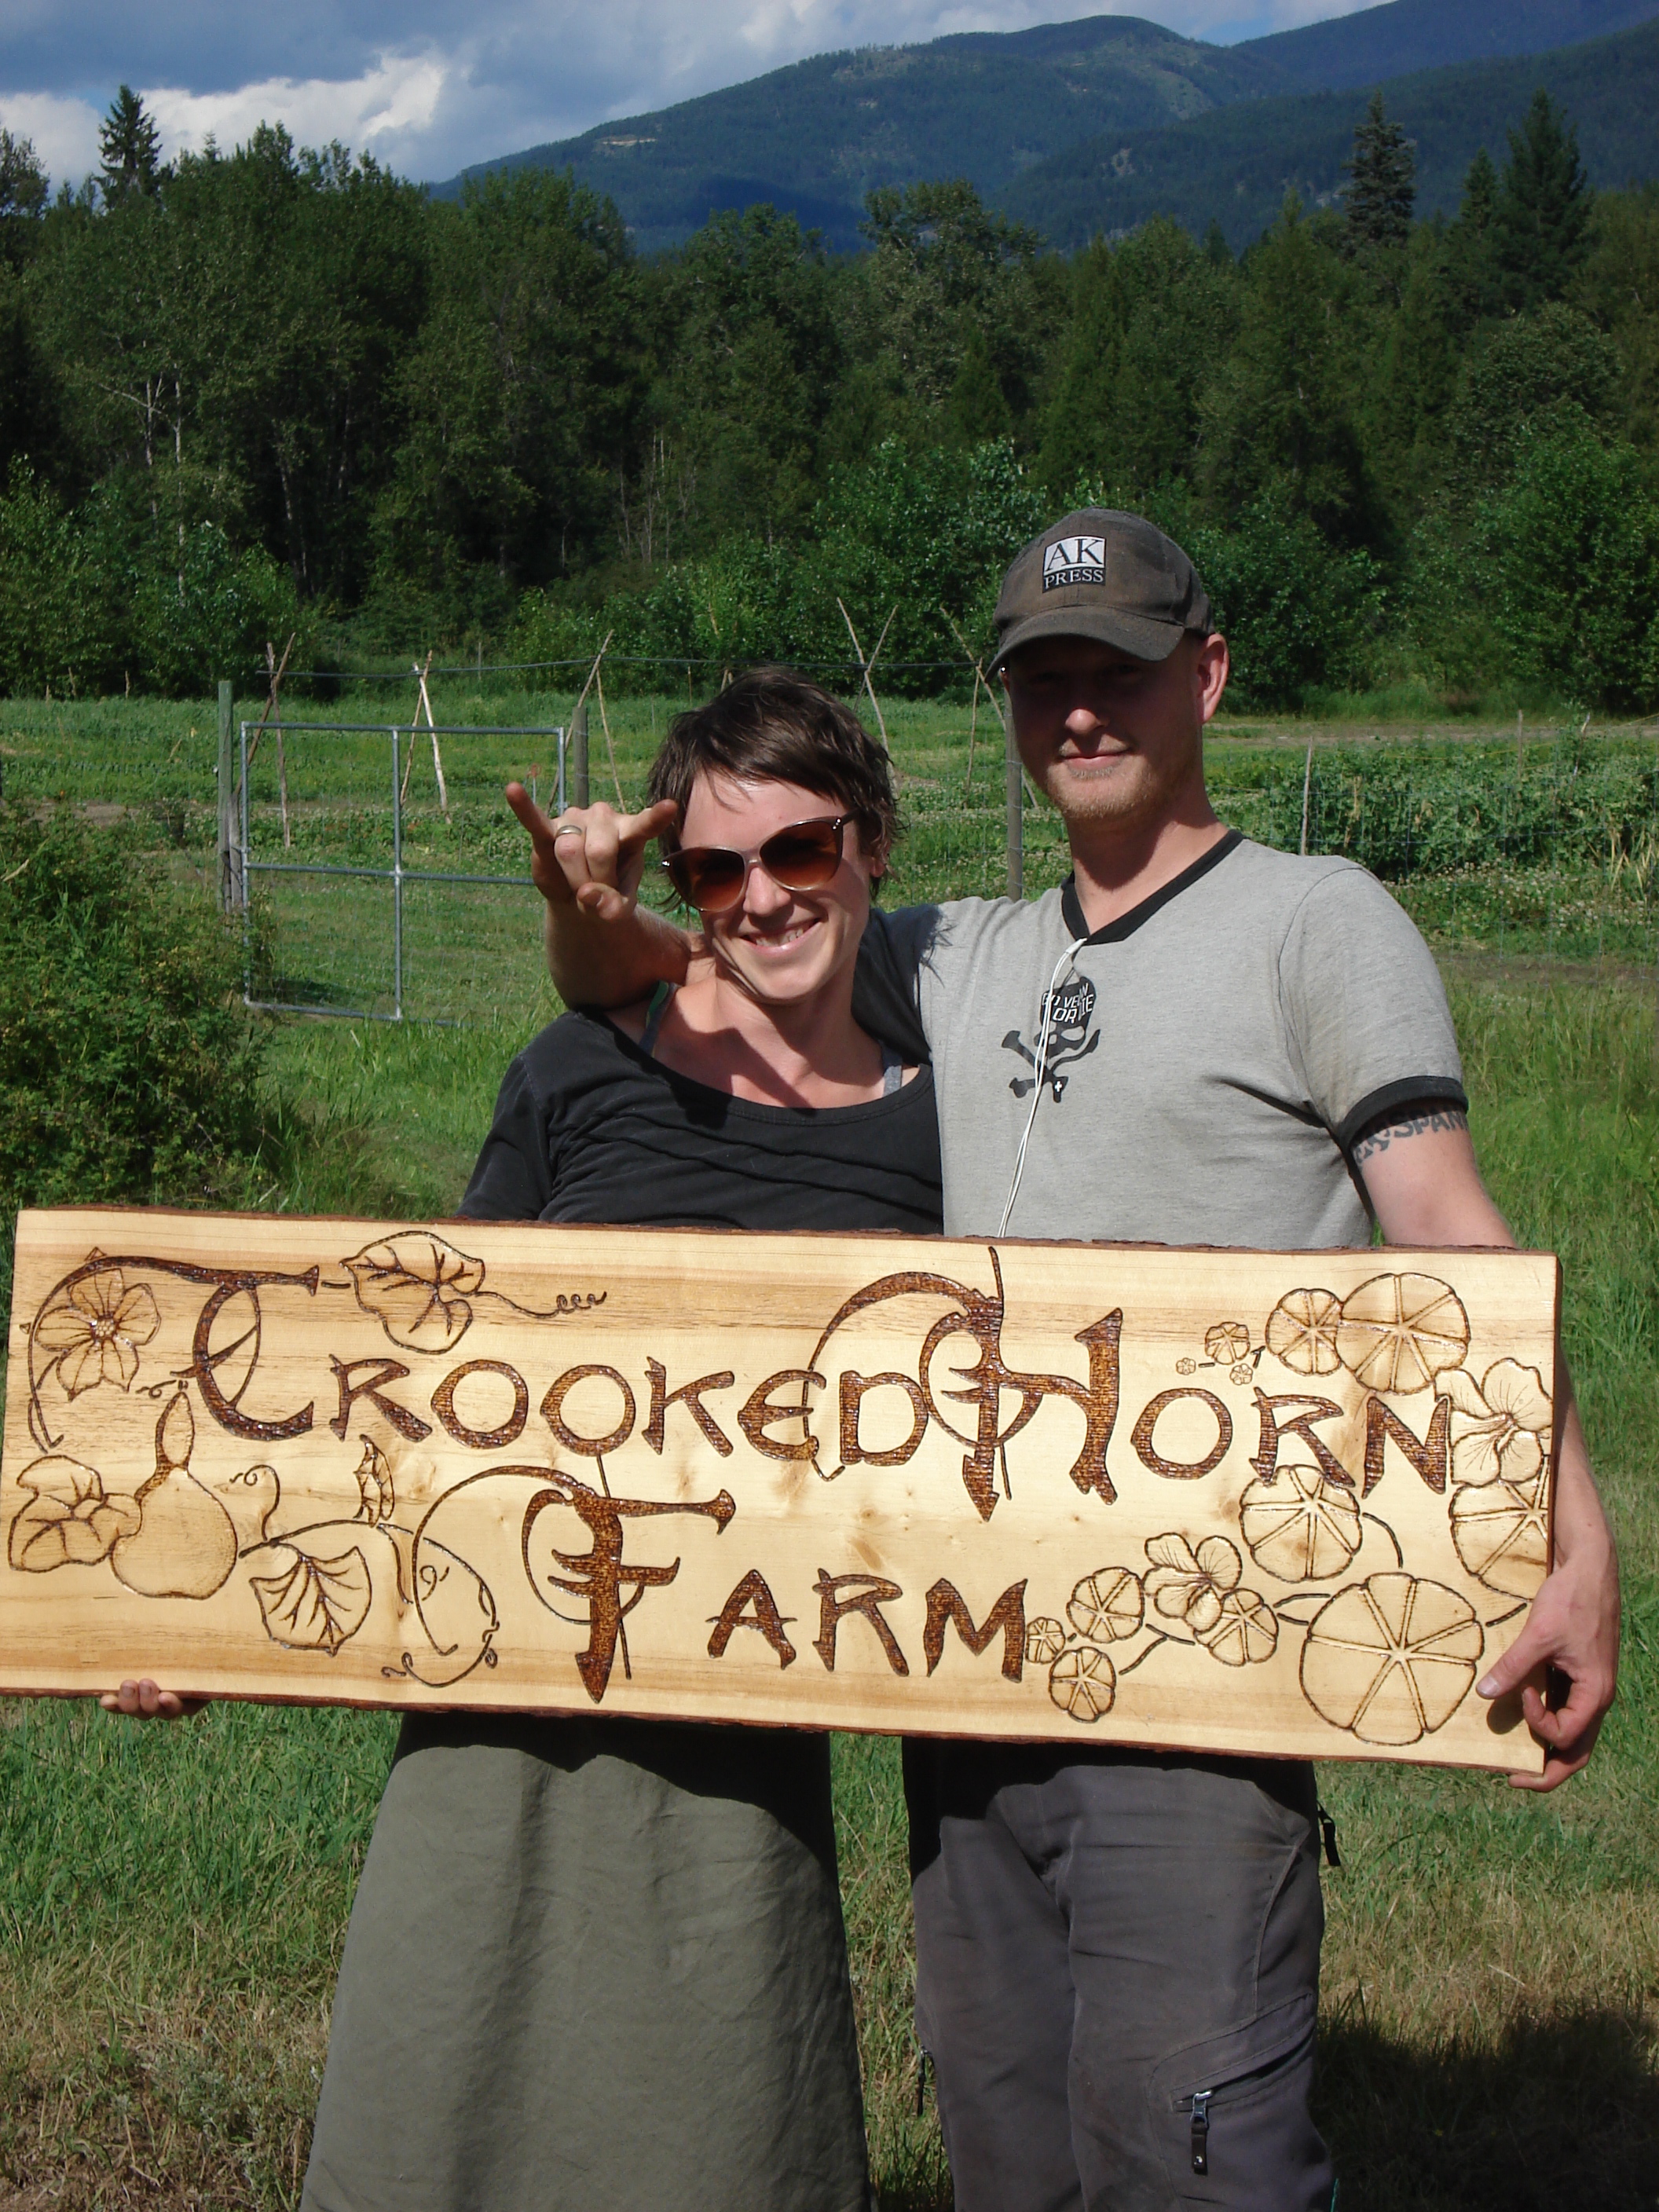 Crooked-Horn-Farm